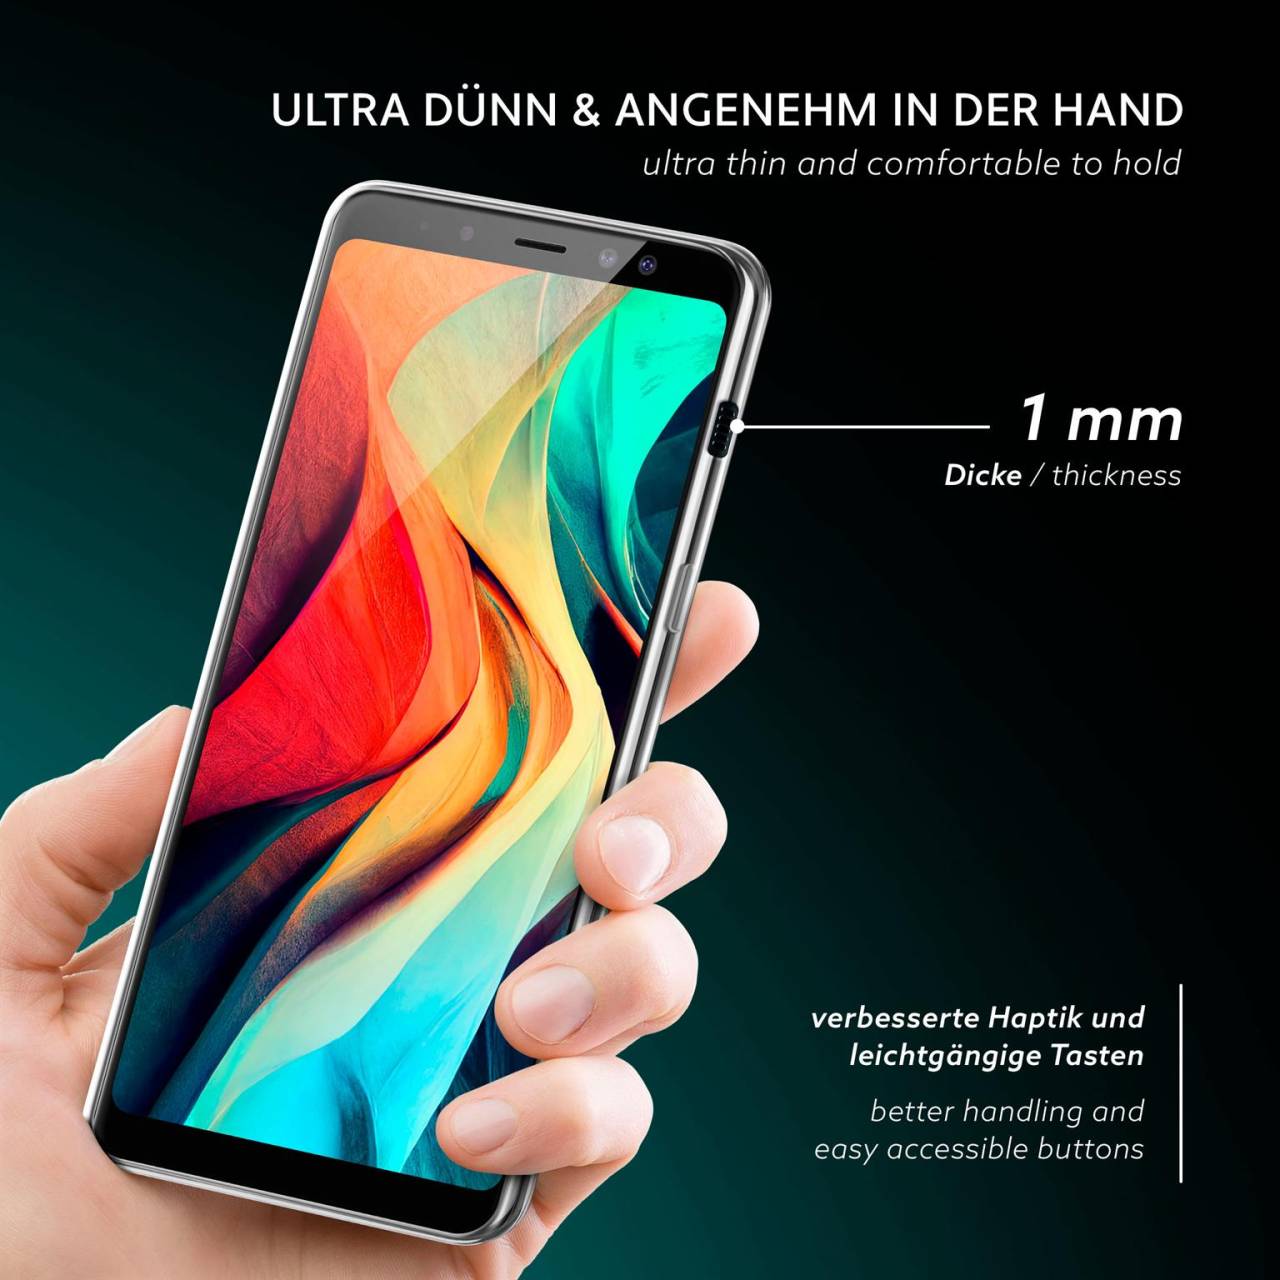 moex Aero Case für Samsung Galaxy A8 (2018) – Durchsichtige Hülle aus Silikon, Ultra Slim Handyhülle